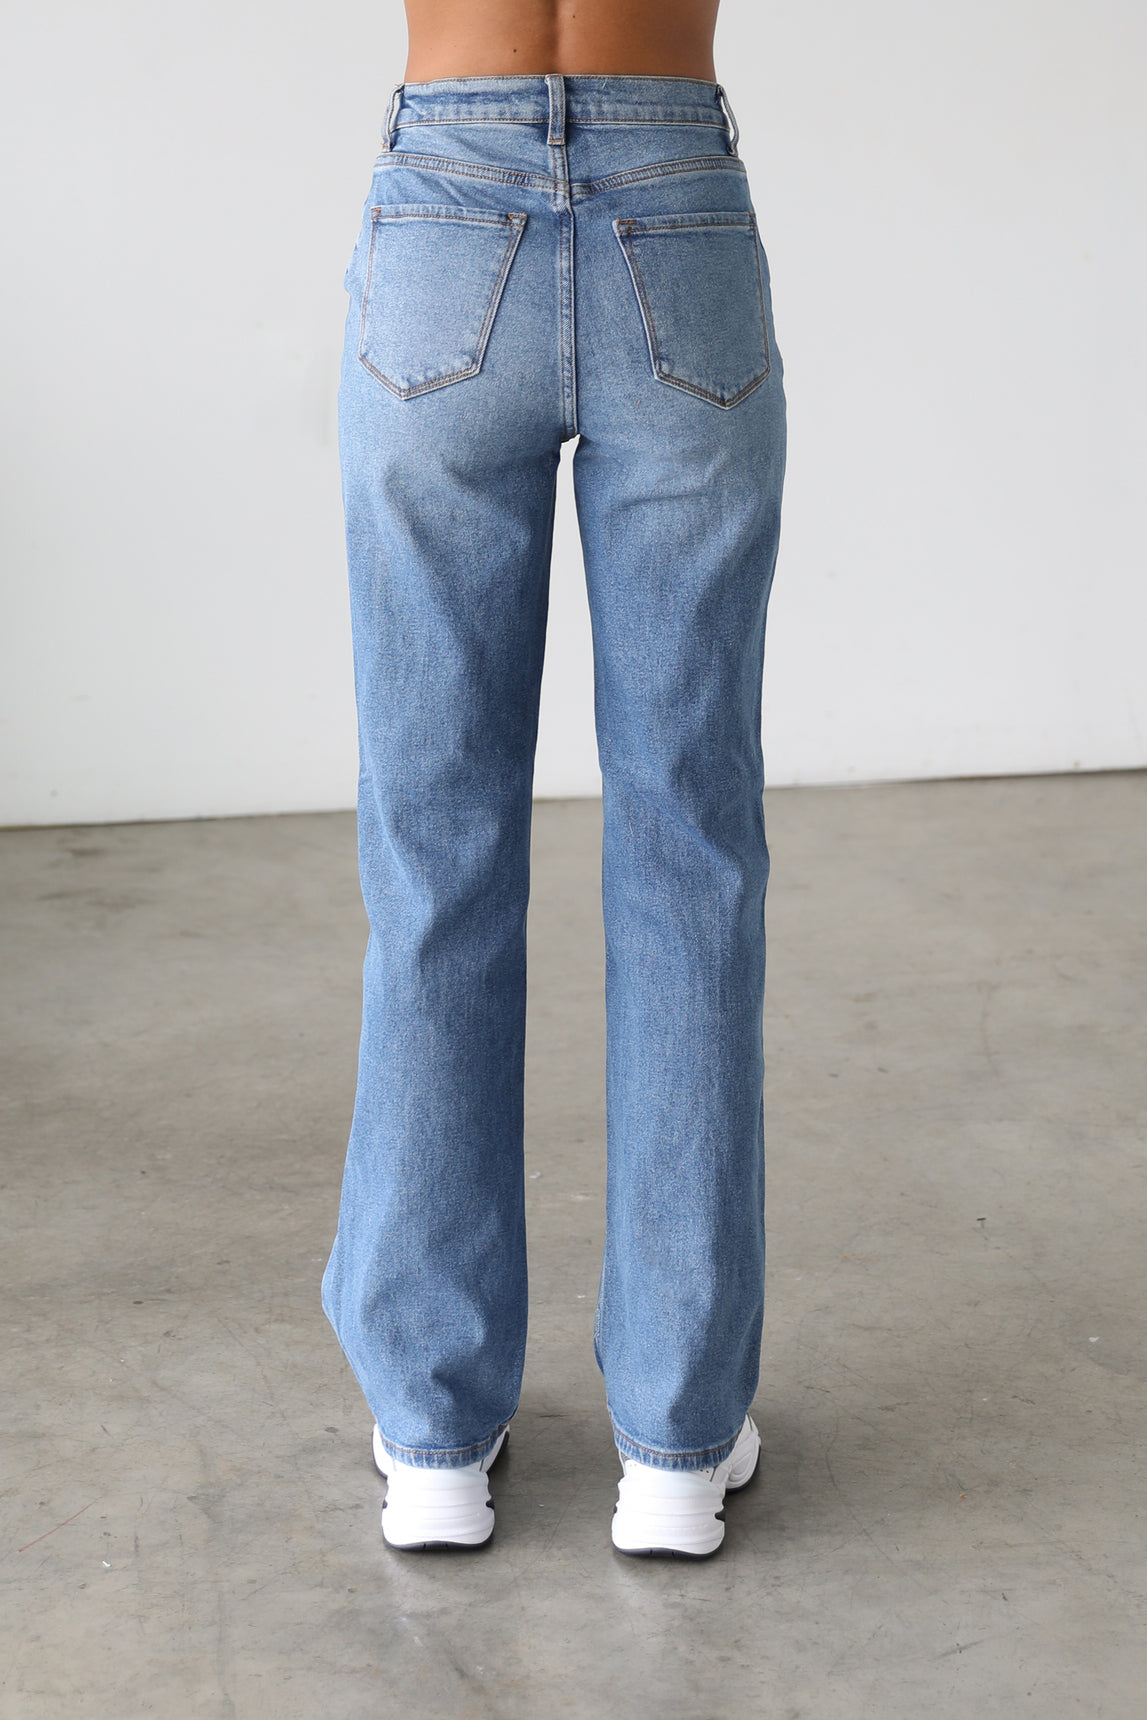 DOGMA DENIM - High Rise Straight Leg Denim Jeans - Medium- 7106